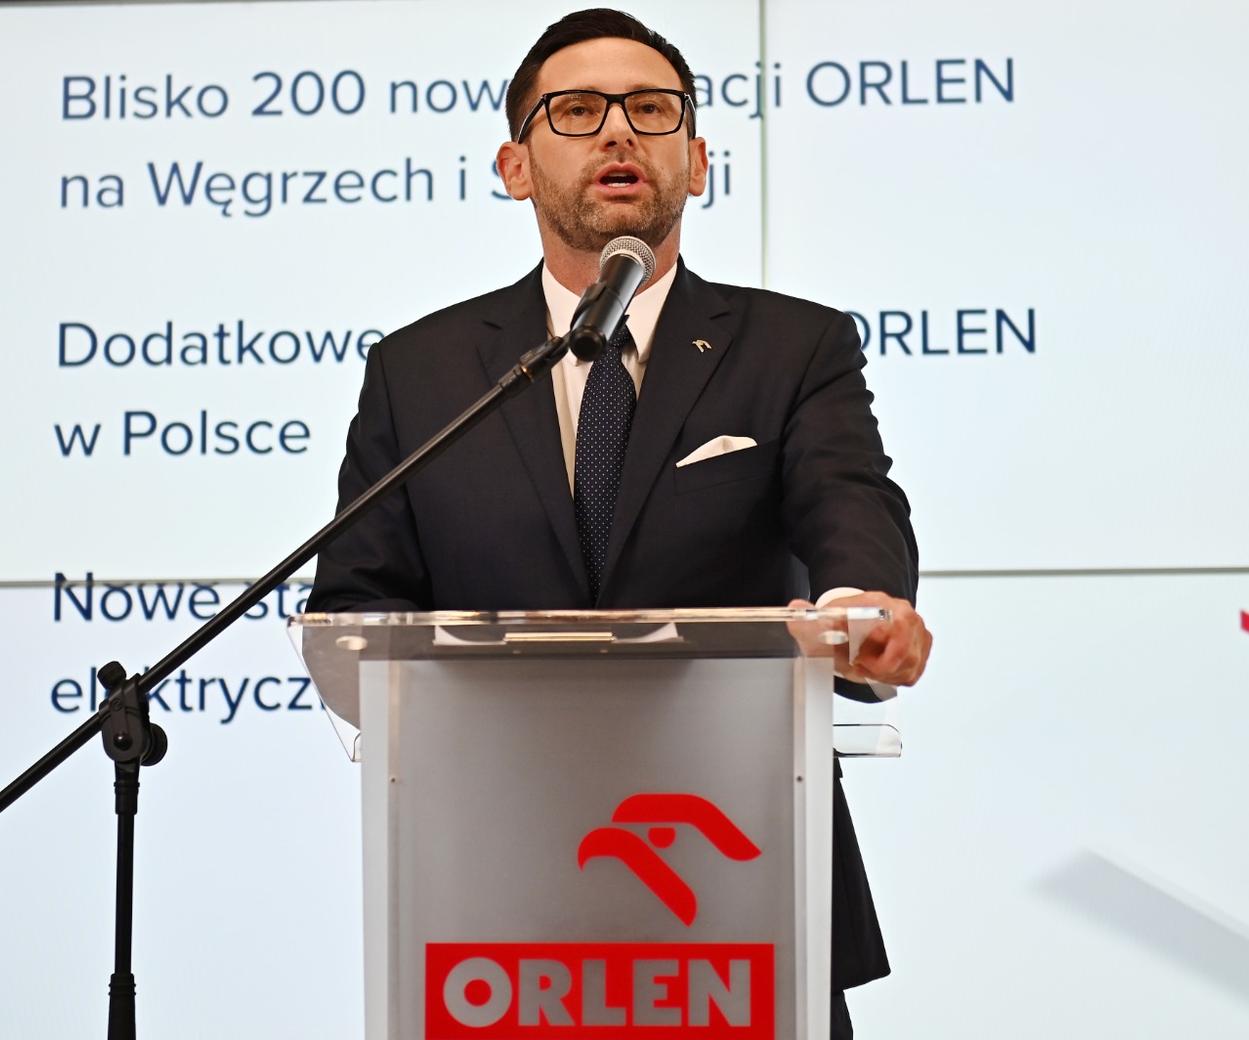 PKN-Präsident Orlen über die Kraftstoffpreise.  Unterdessen bereitet die Europäische Union ein Embargo auf russisches Öl vor.  Wird es am Bahnhof teurer?